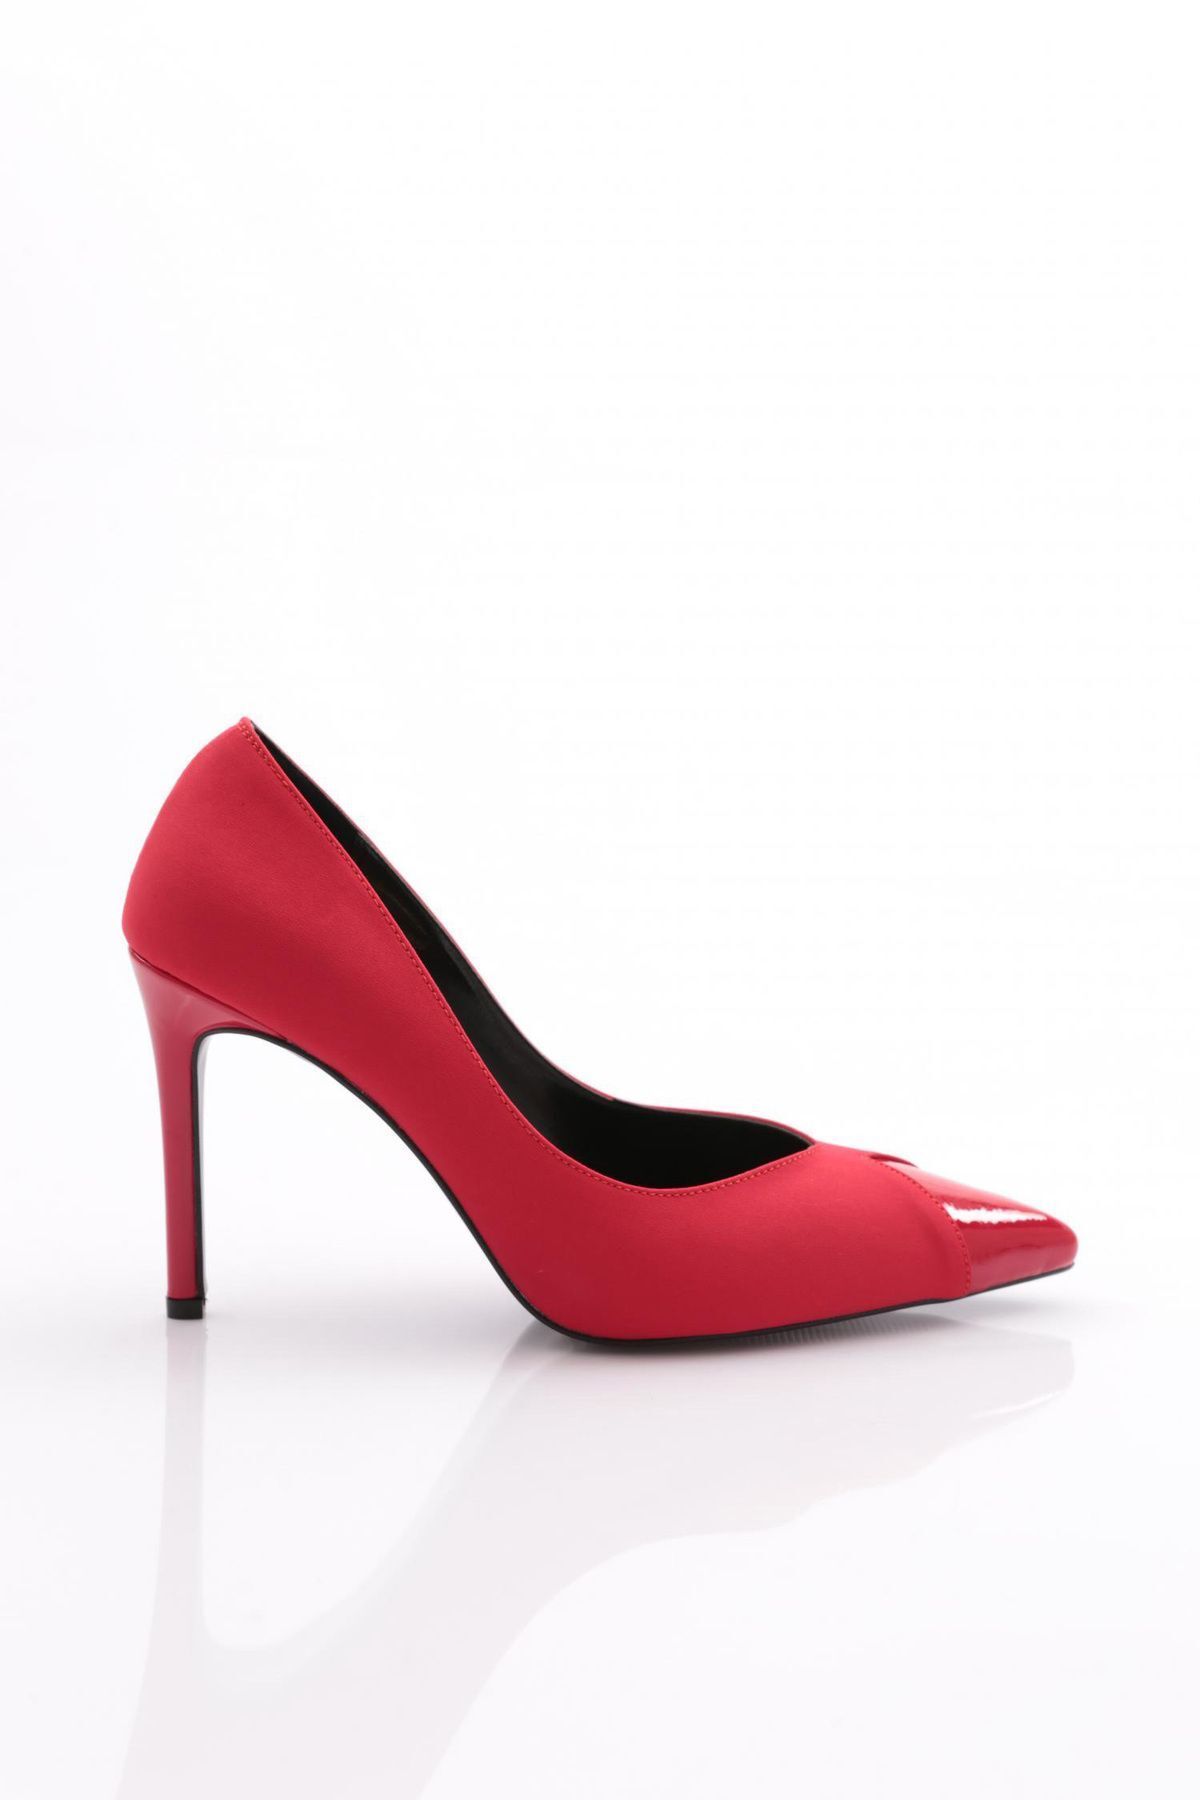 Dgn 5199 Kadın Topuklu Ayakkabı Kırmızı Likra Kırmızı Rugan